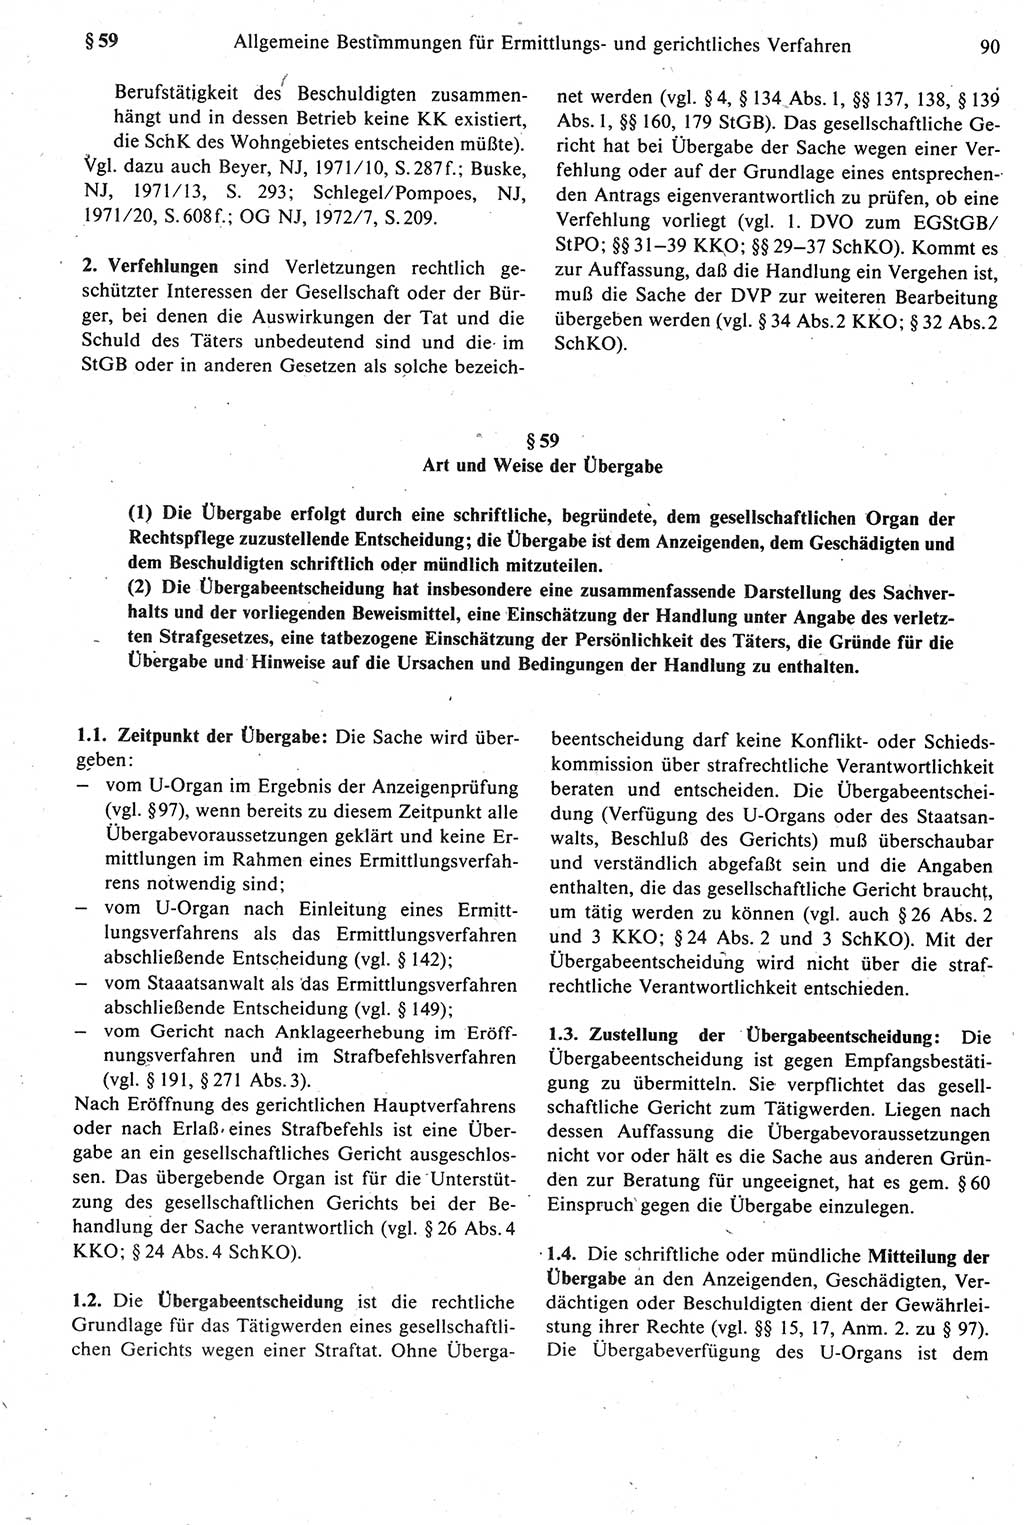 Strafprozeßrecht der DDR [Deutsche Demokratische Republik], Kommentar zur Strafprozeßordnung (StPO) 1987, Seite 90 (Strafprozeßr. DDR Komm. StPO 1987, S. 90)